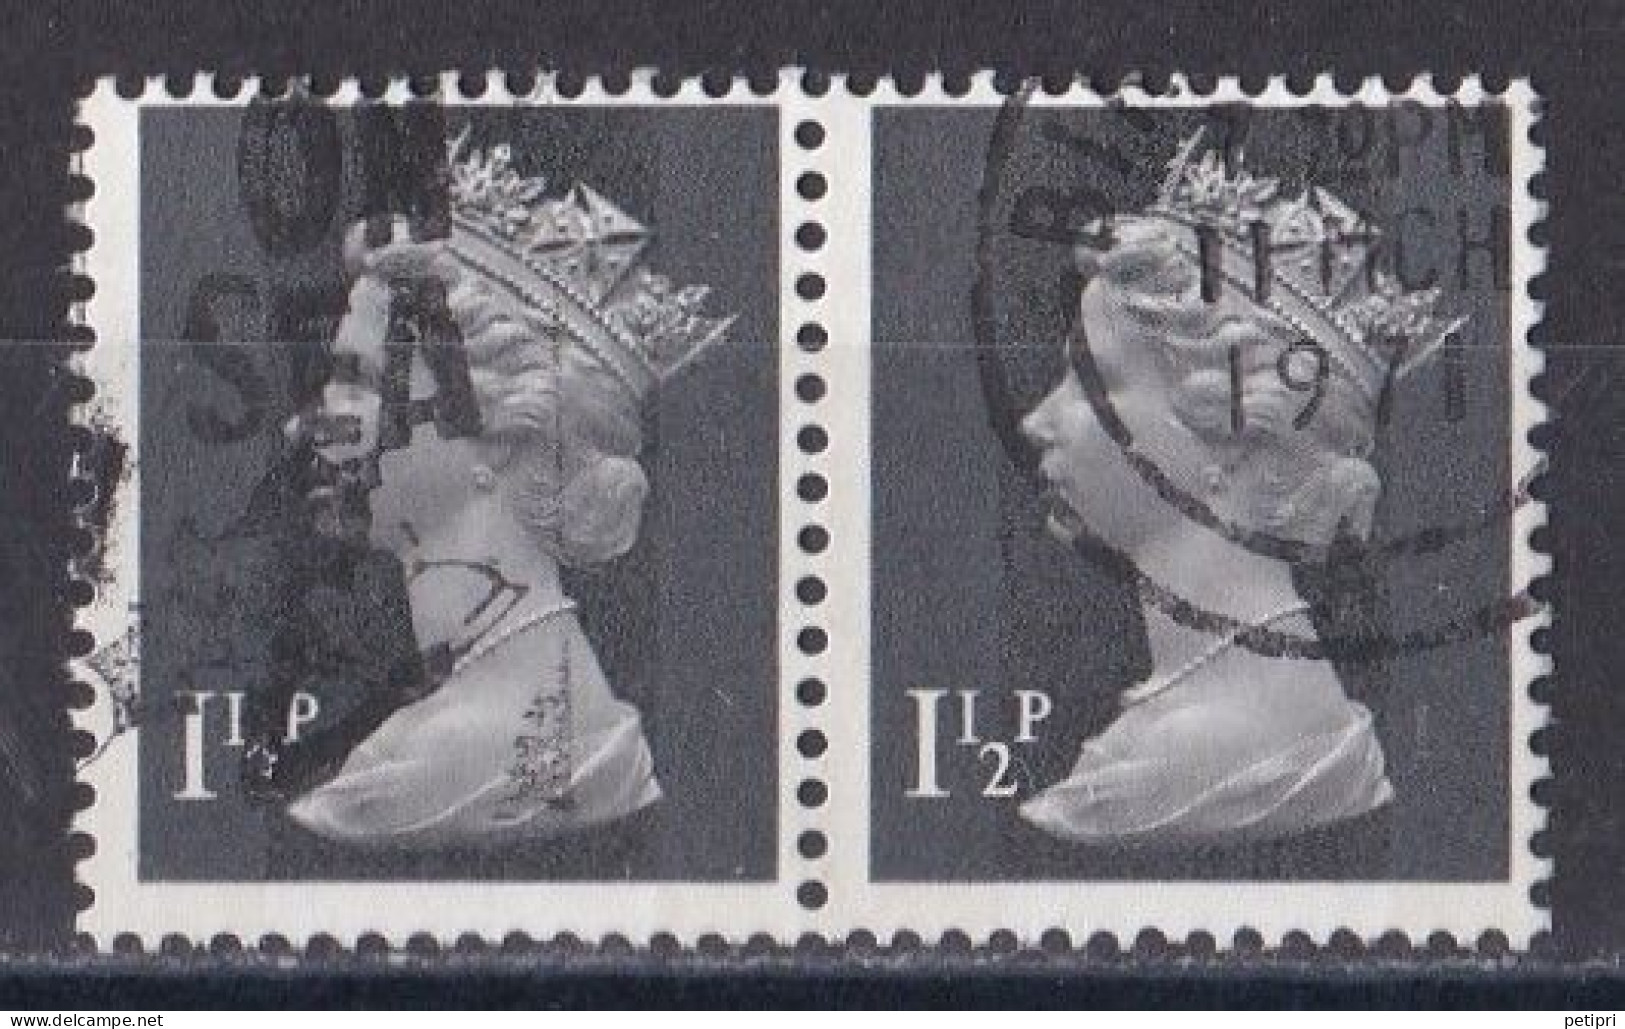 Grande Bretagne - 1971 - 1980 -  Elisabeth II -  Y&T N °  607  Paire  Oblitérée - Gebraucht